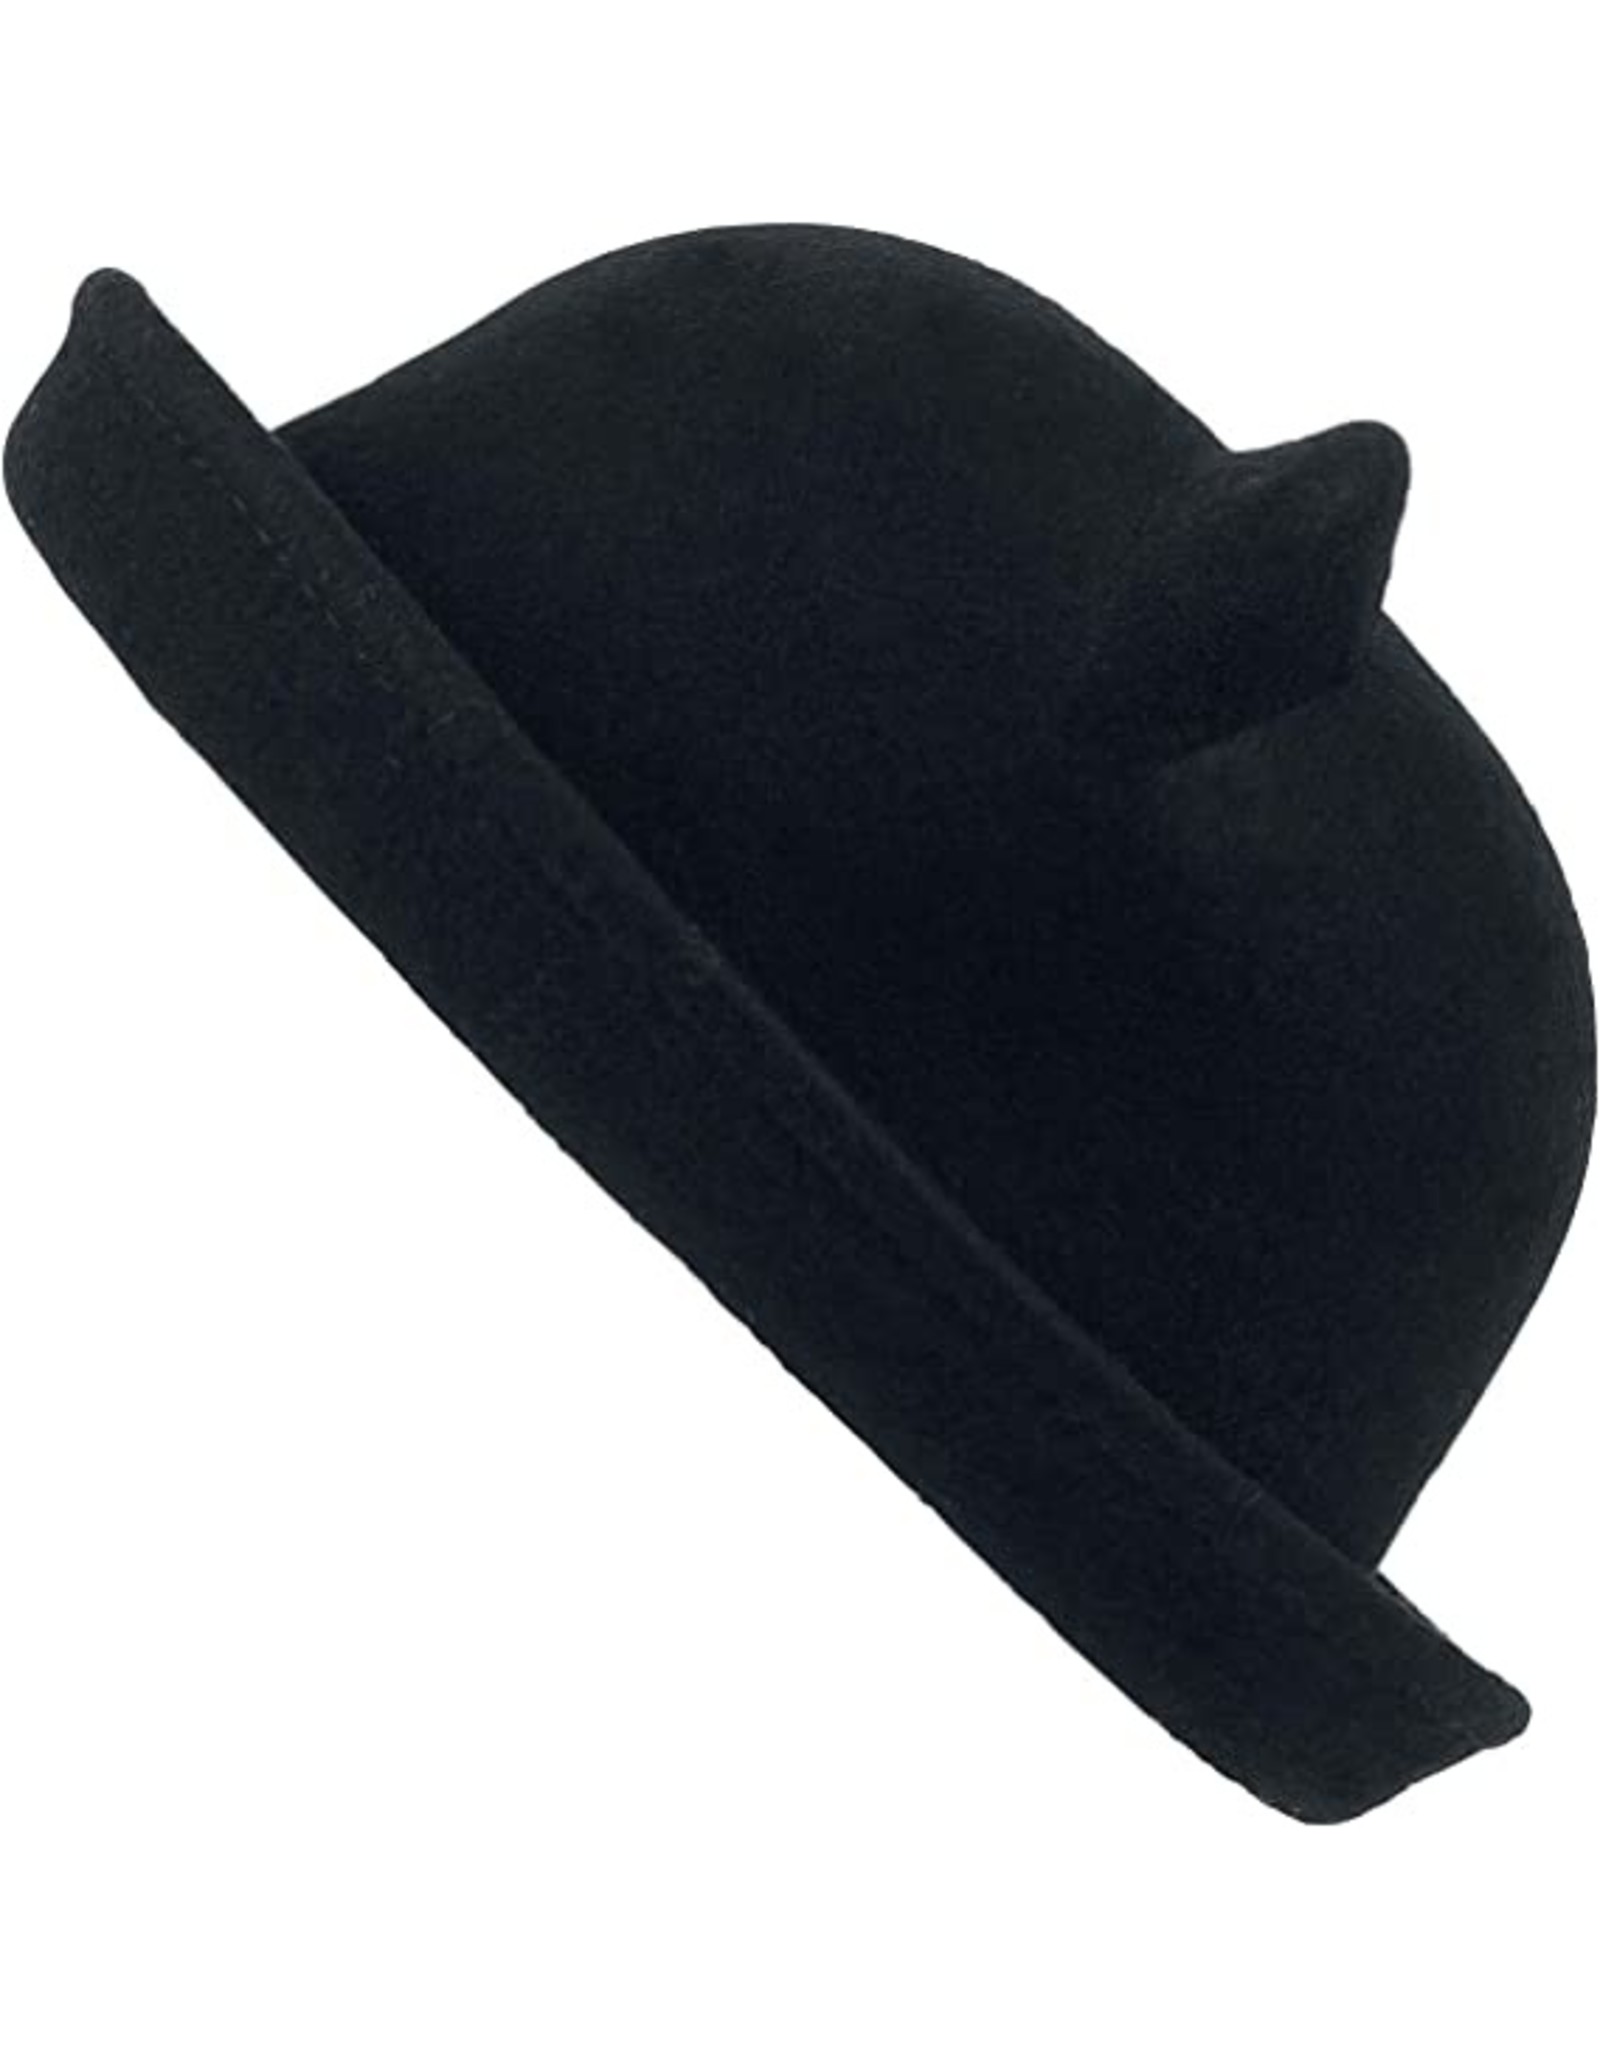 Poizen Industries Gothic steampunk accessories - Poizen Industries Kitty Bowler Hat Black